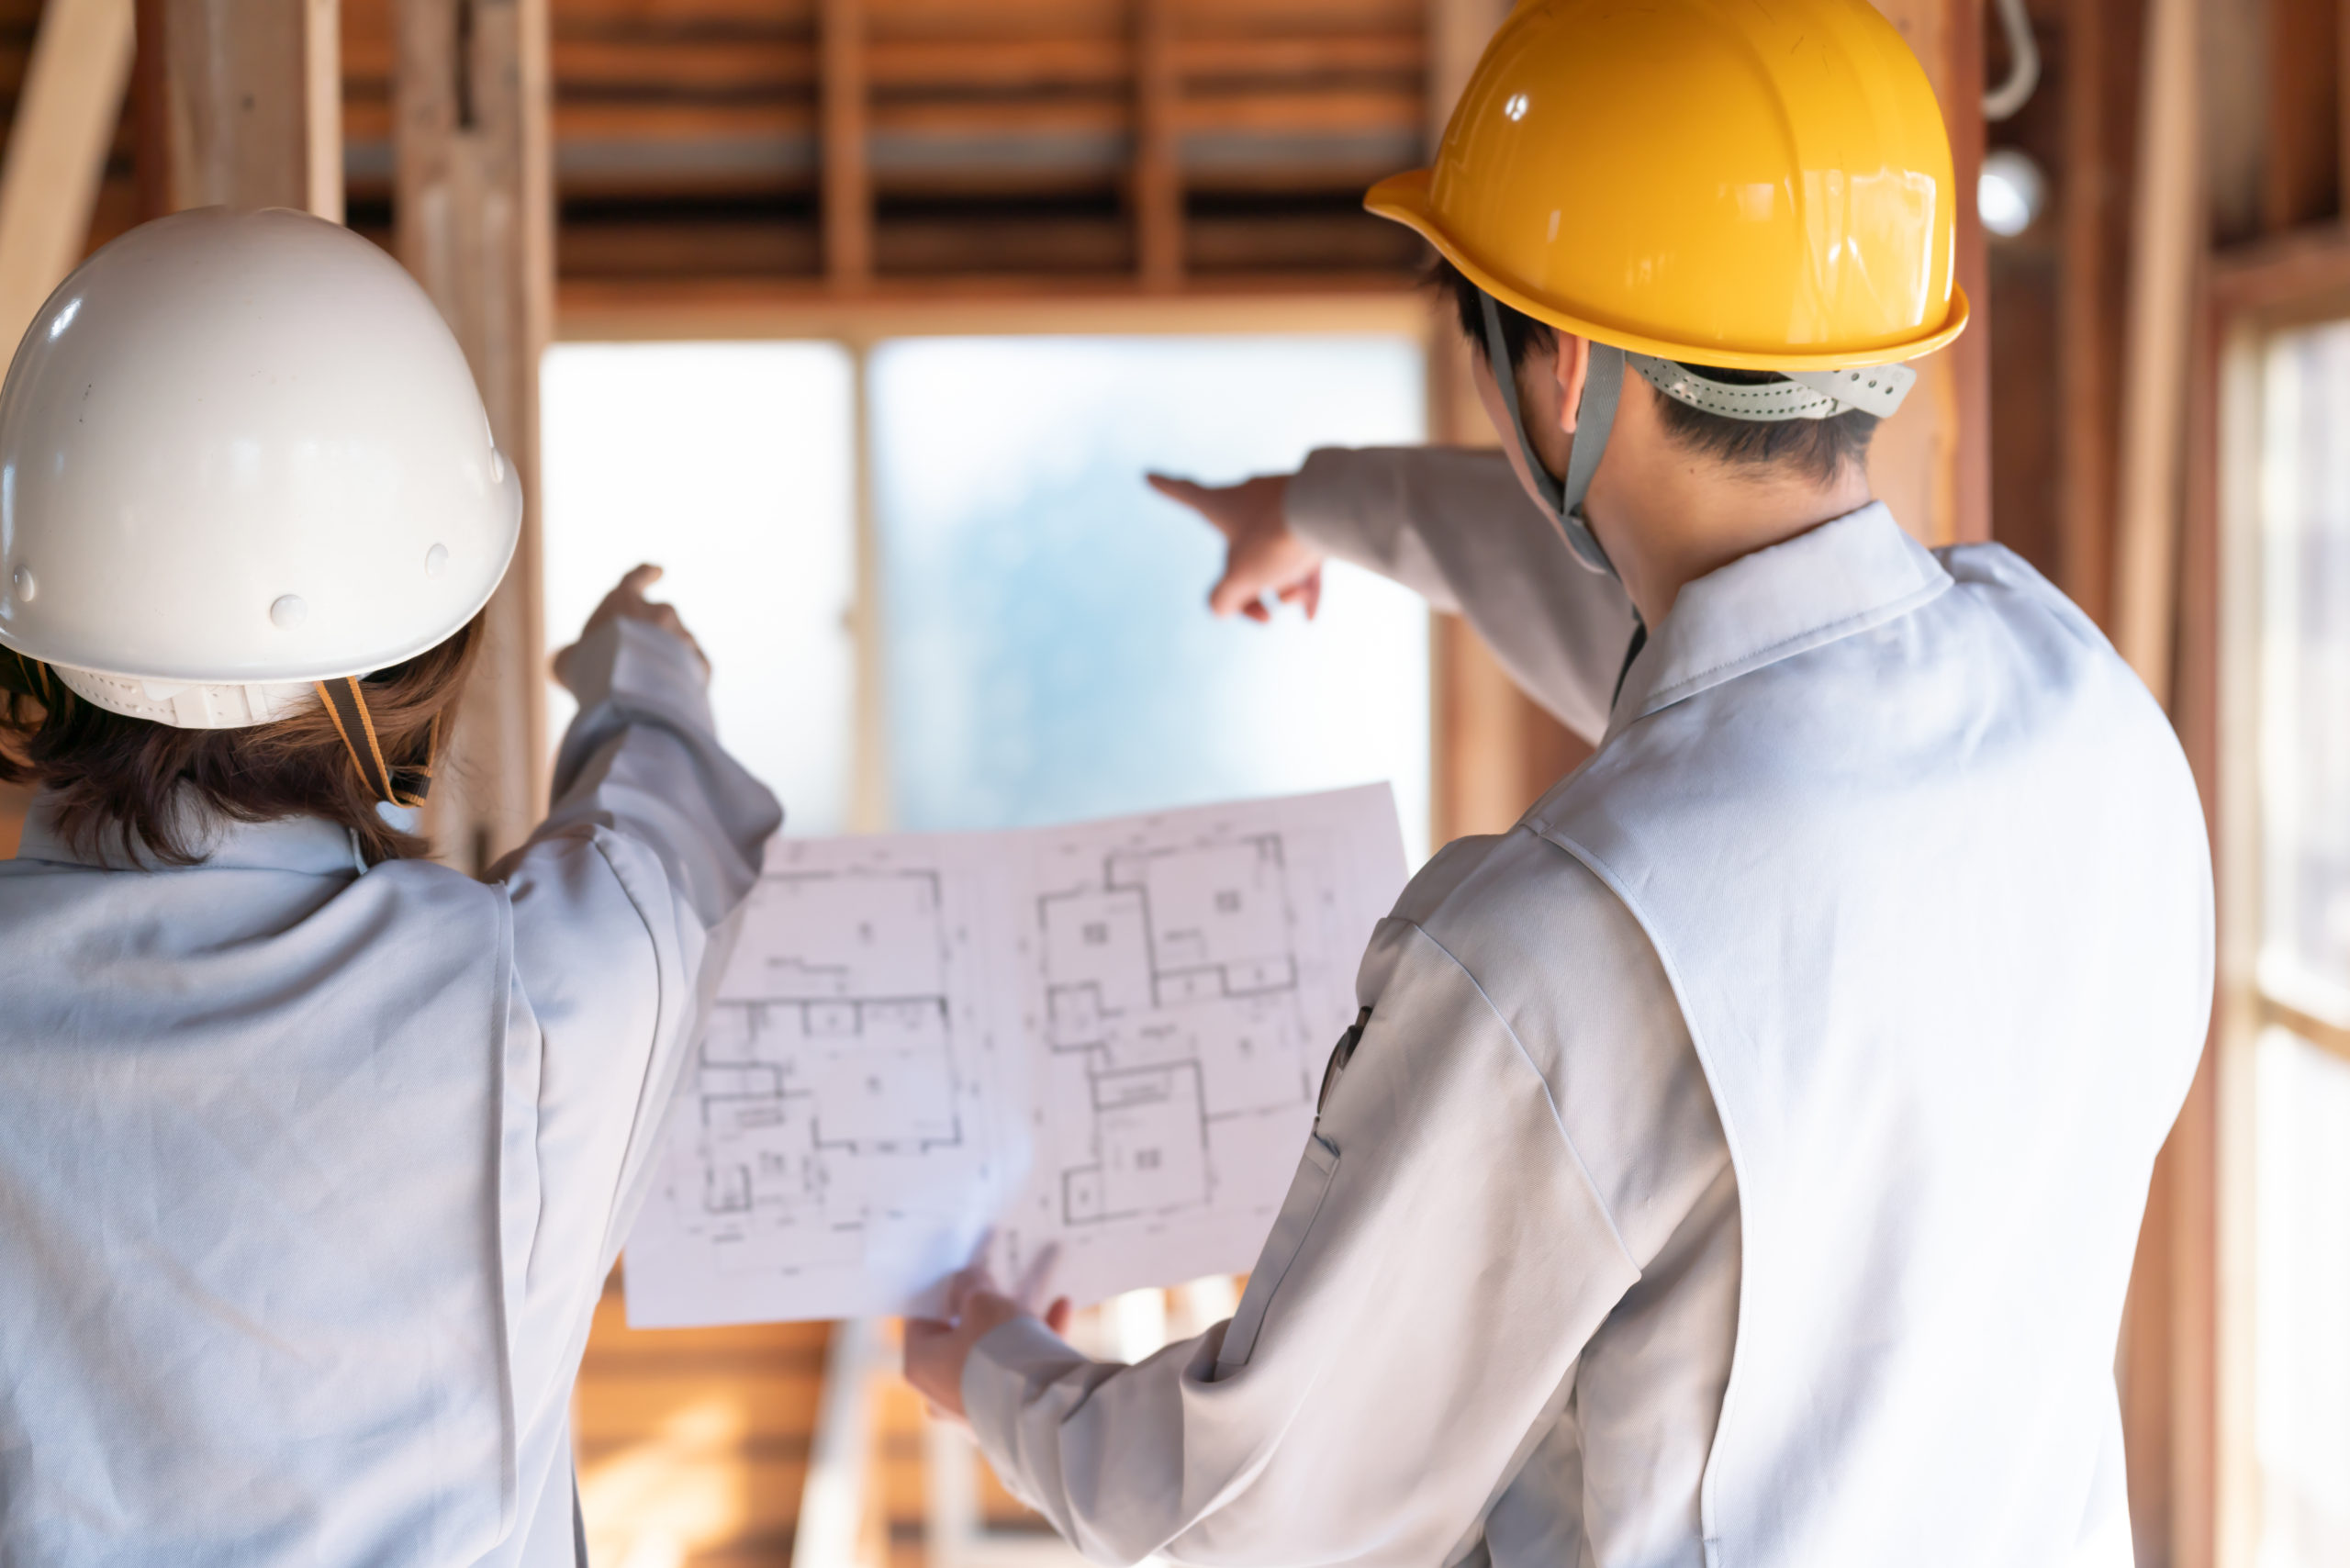 おススメ資格 建築施工管理技士資格とは 難易度や合格率を解説 お知らせ 建築 インテリア 住宅業界の求人情報サイト